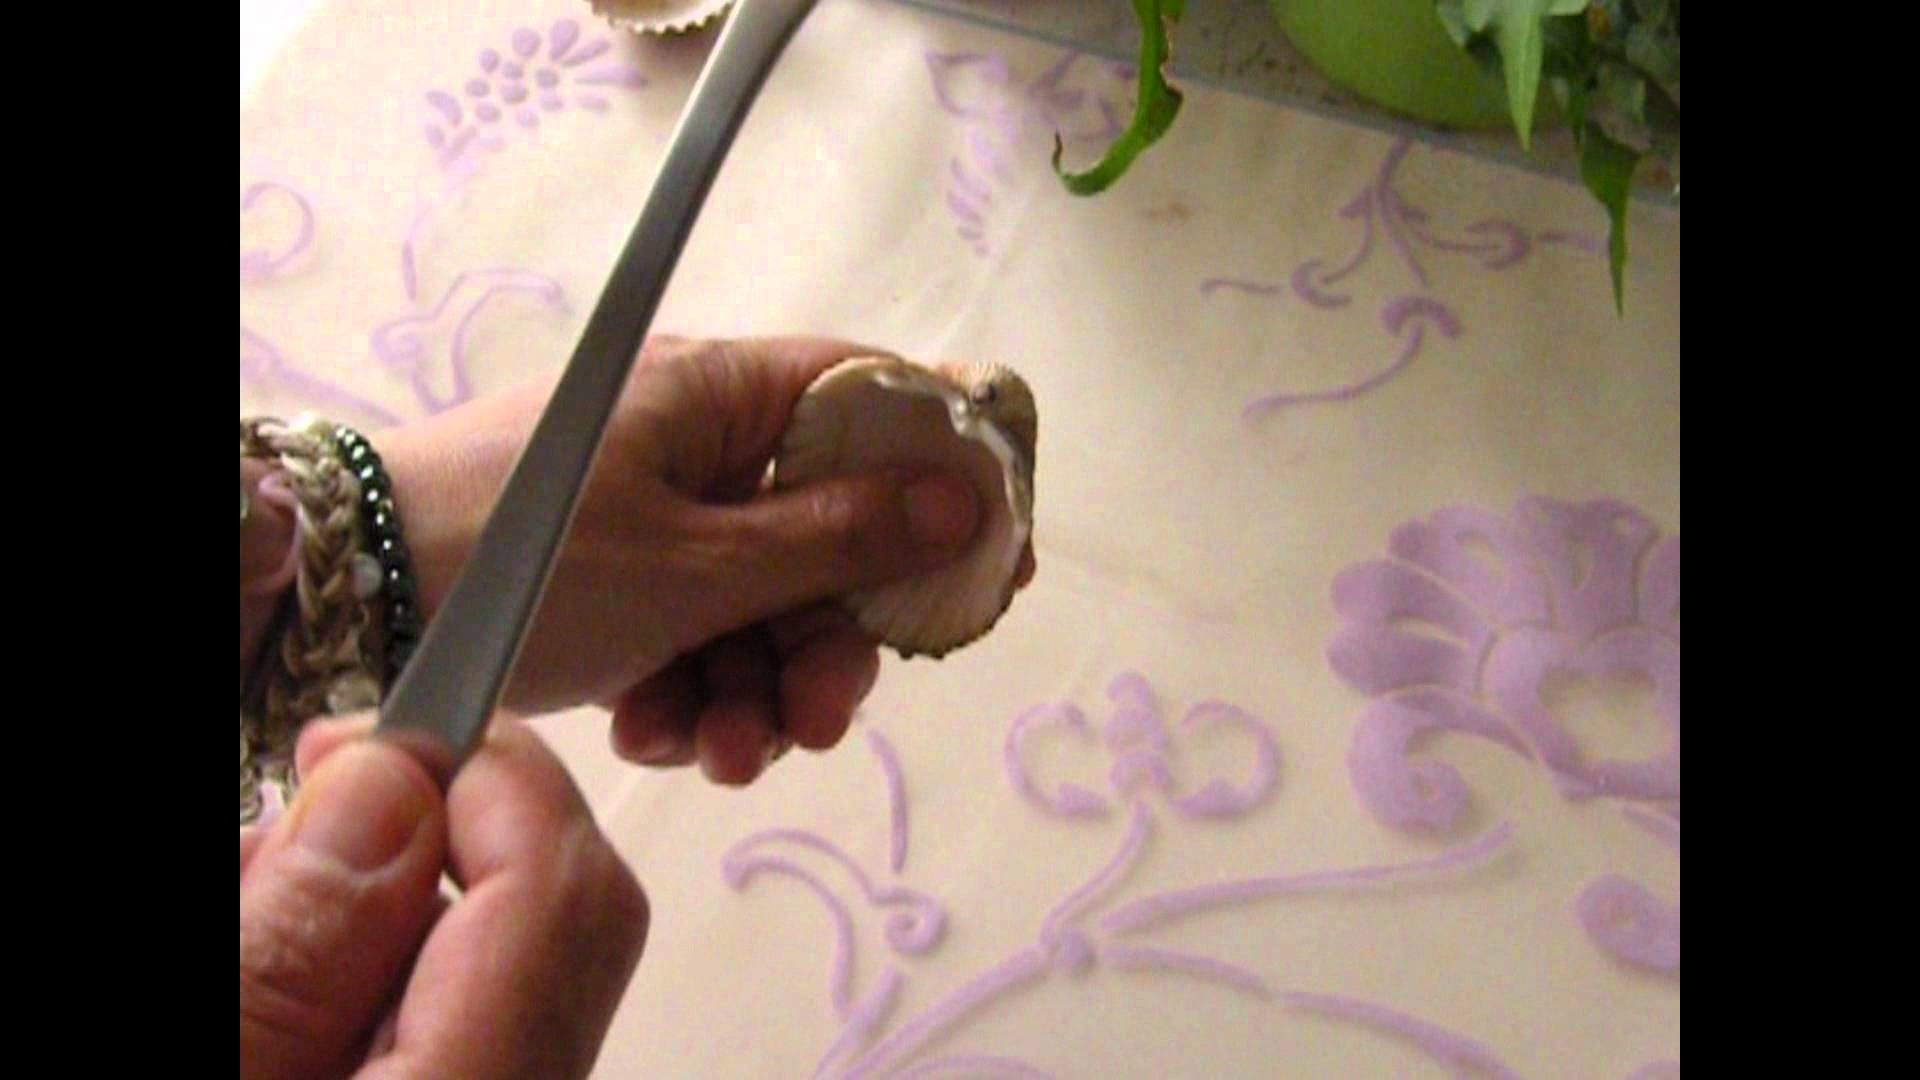 Manualidades y trucos: Hacer agujeros a las conchas con una cuchara